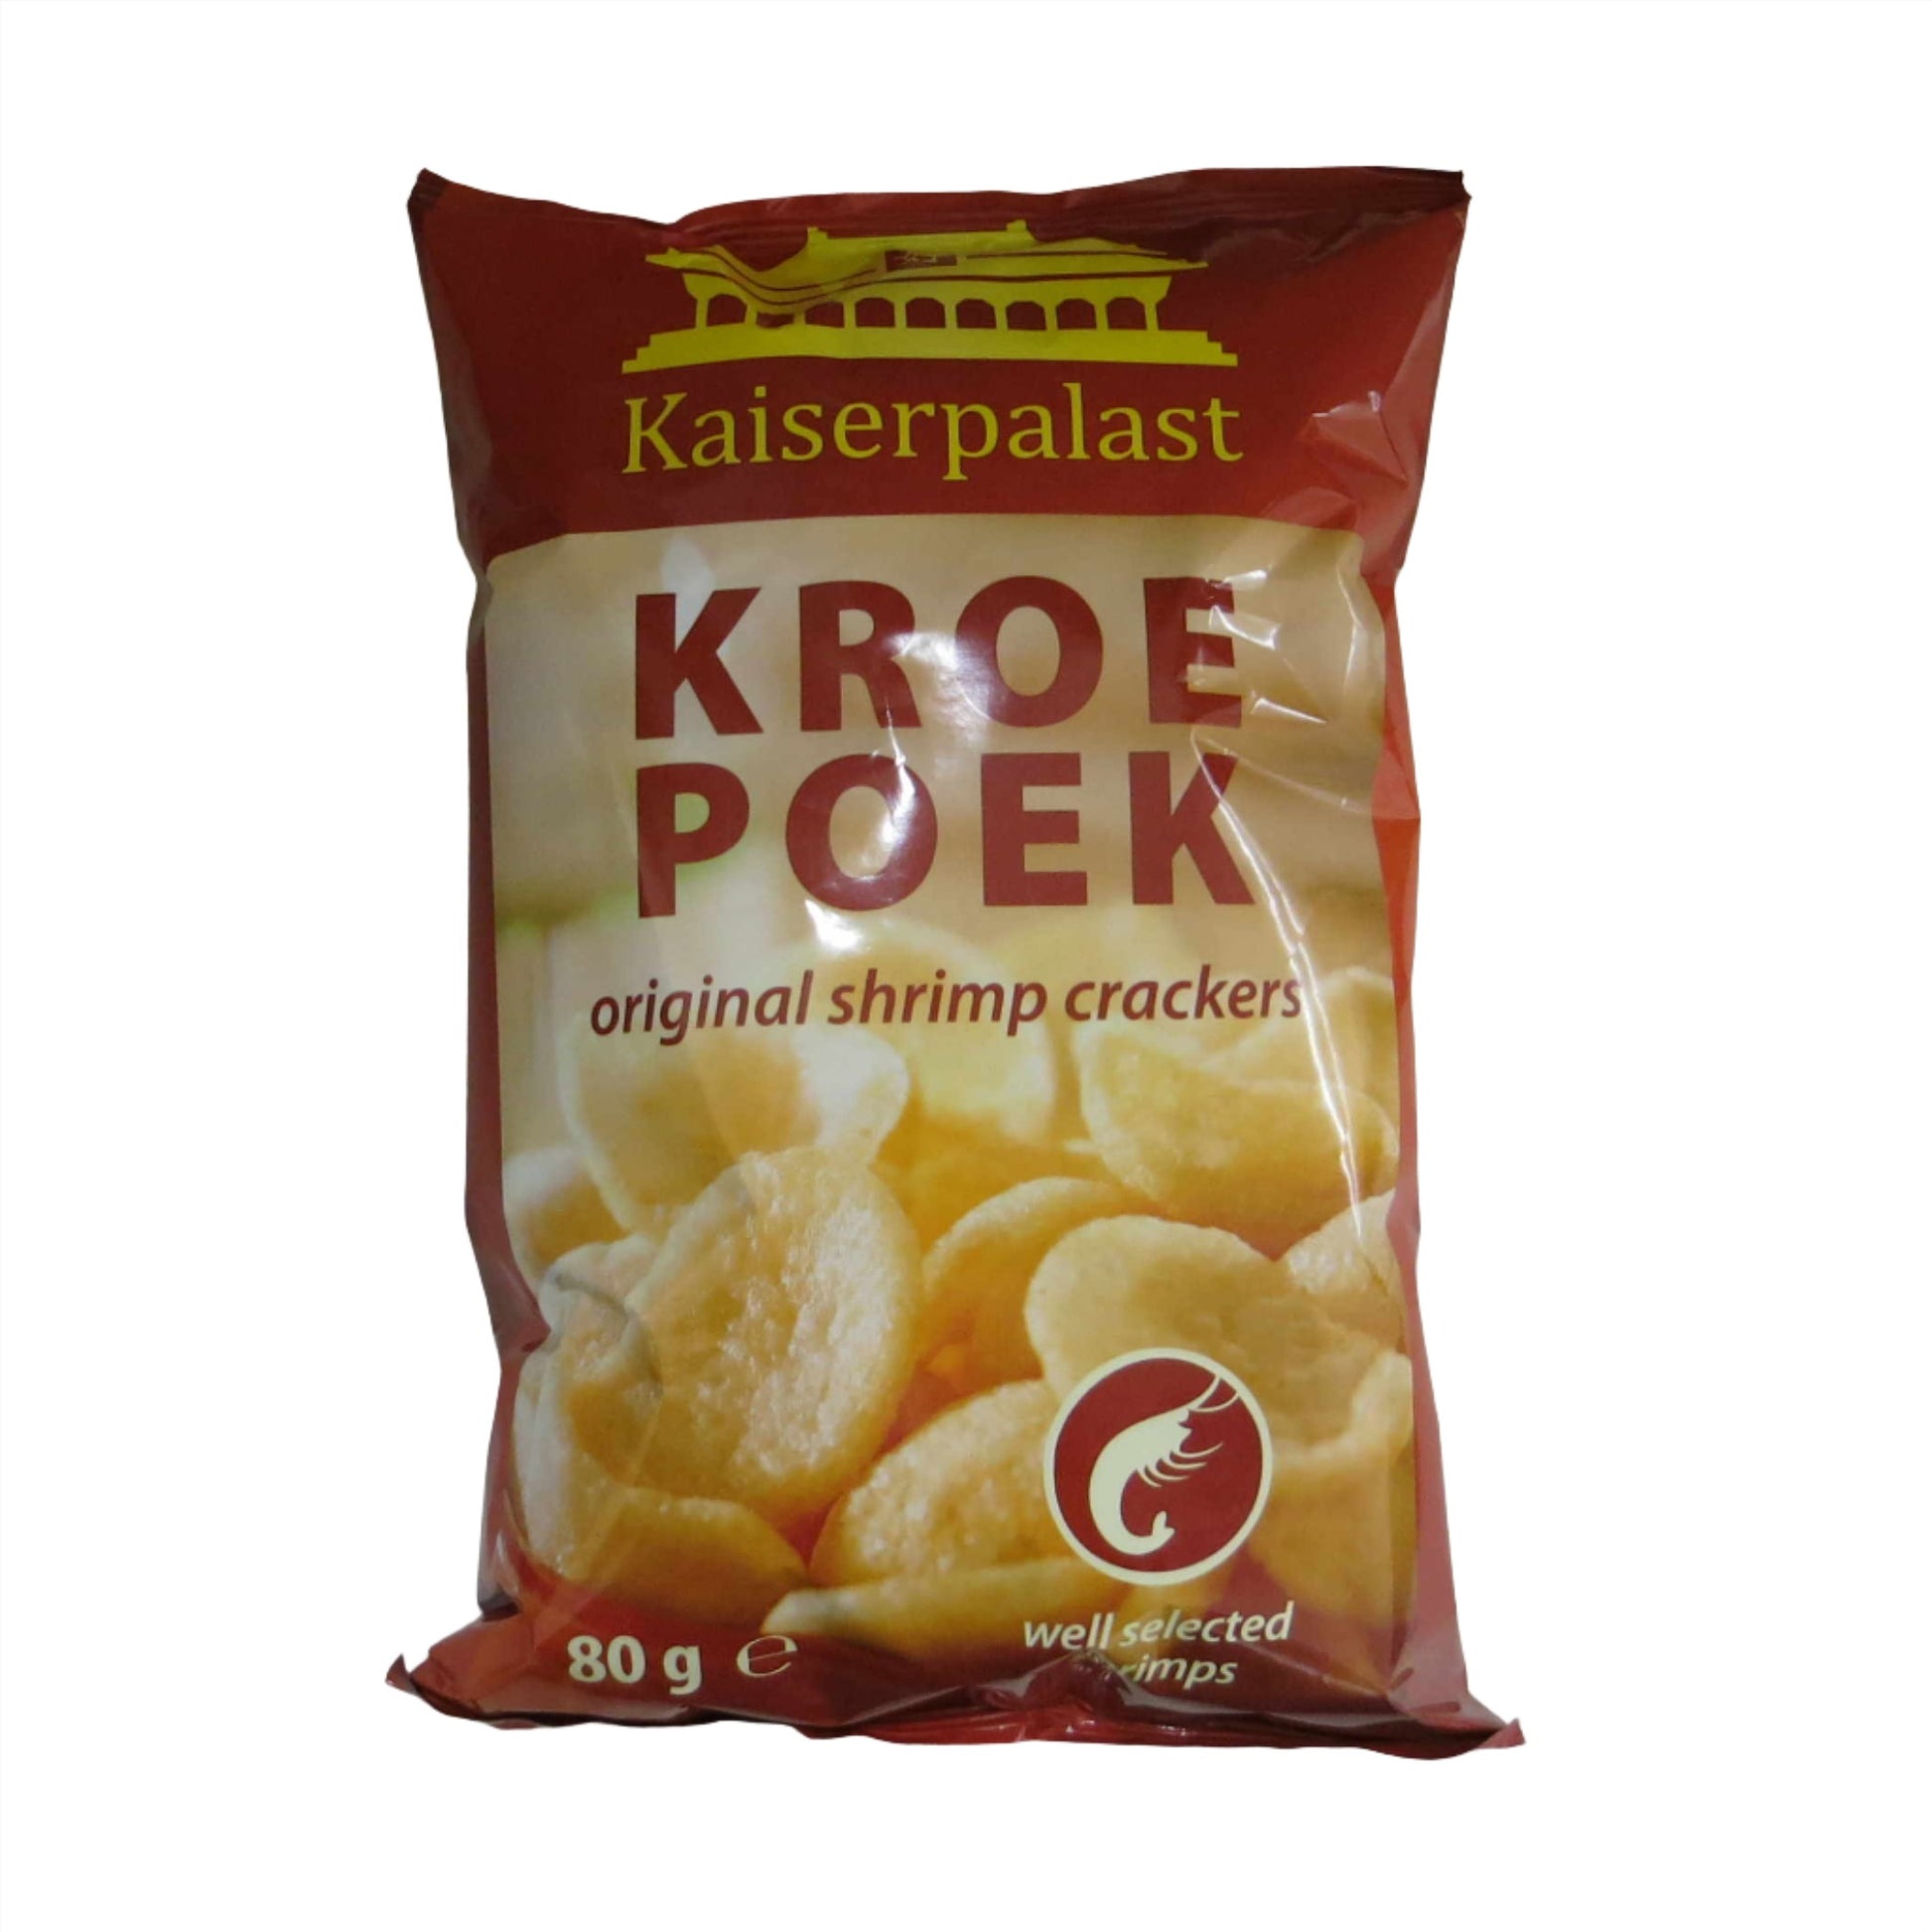 Kaiserpalst Kroepoek 80g - Worldster Markt e.K.